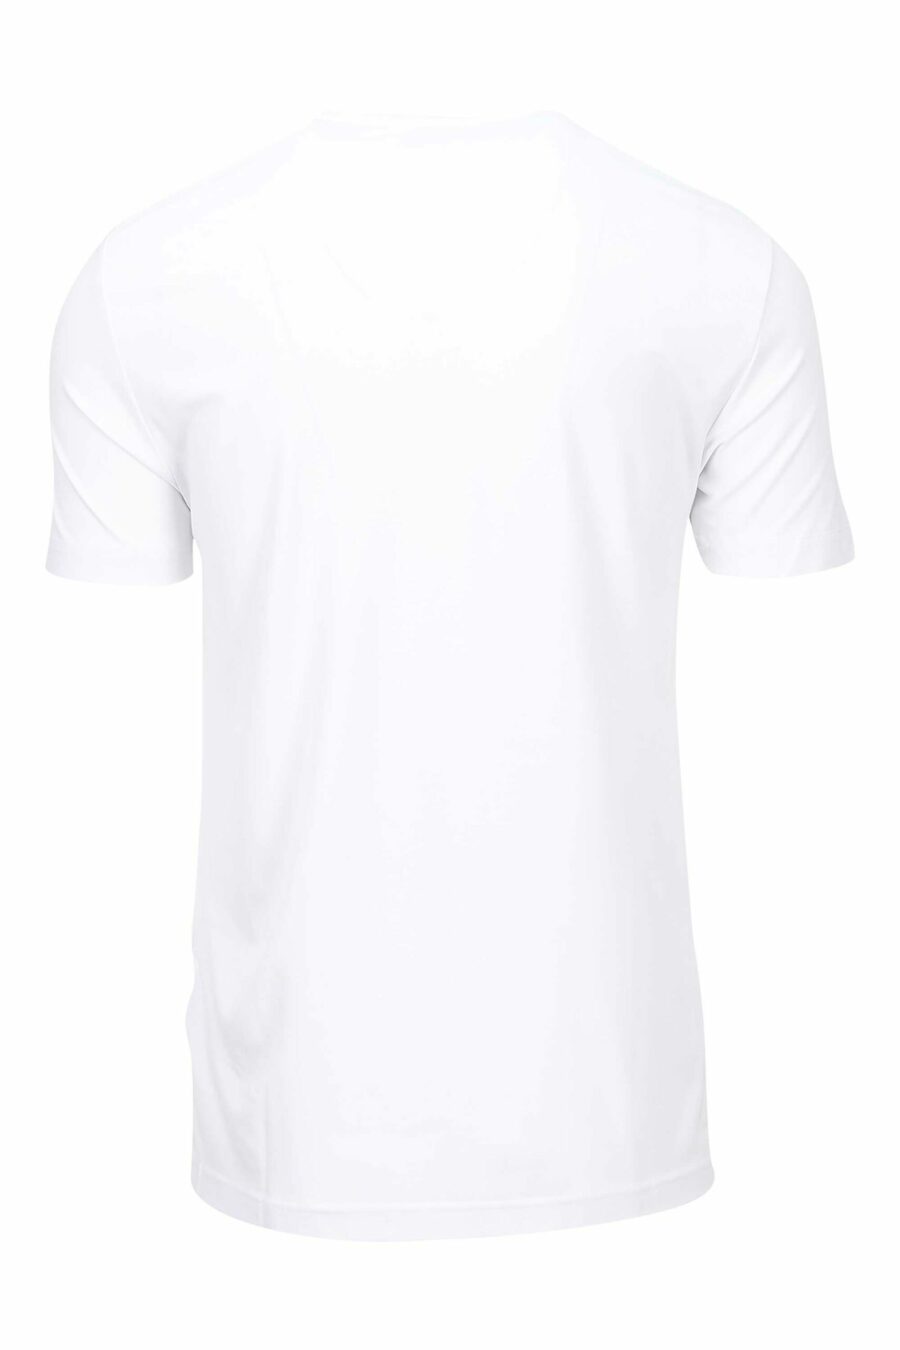 Weißes T-Shirt mit Mini-Logo "lux identity" - 8056787978898 1 skaliert